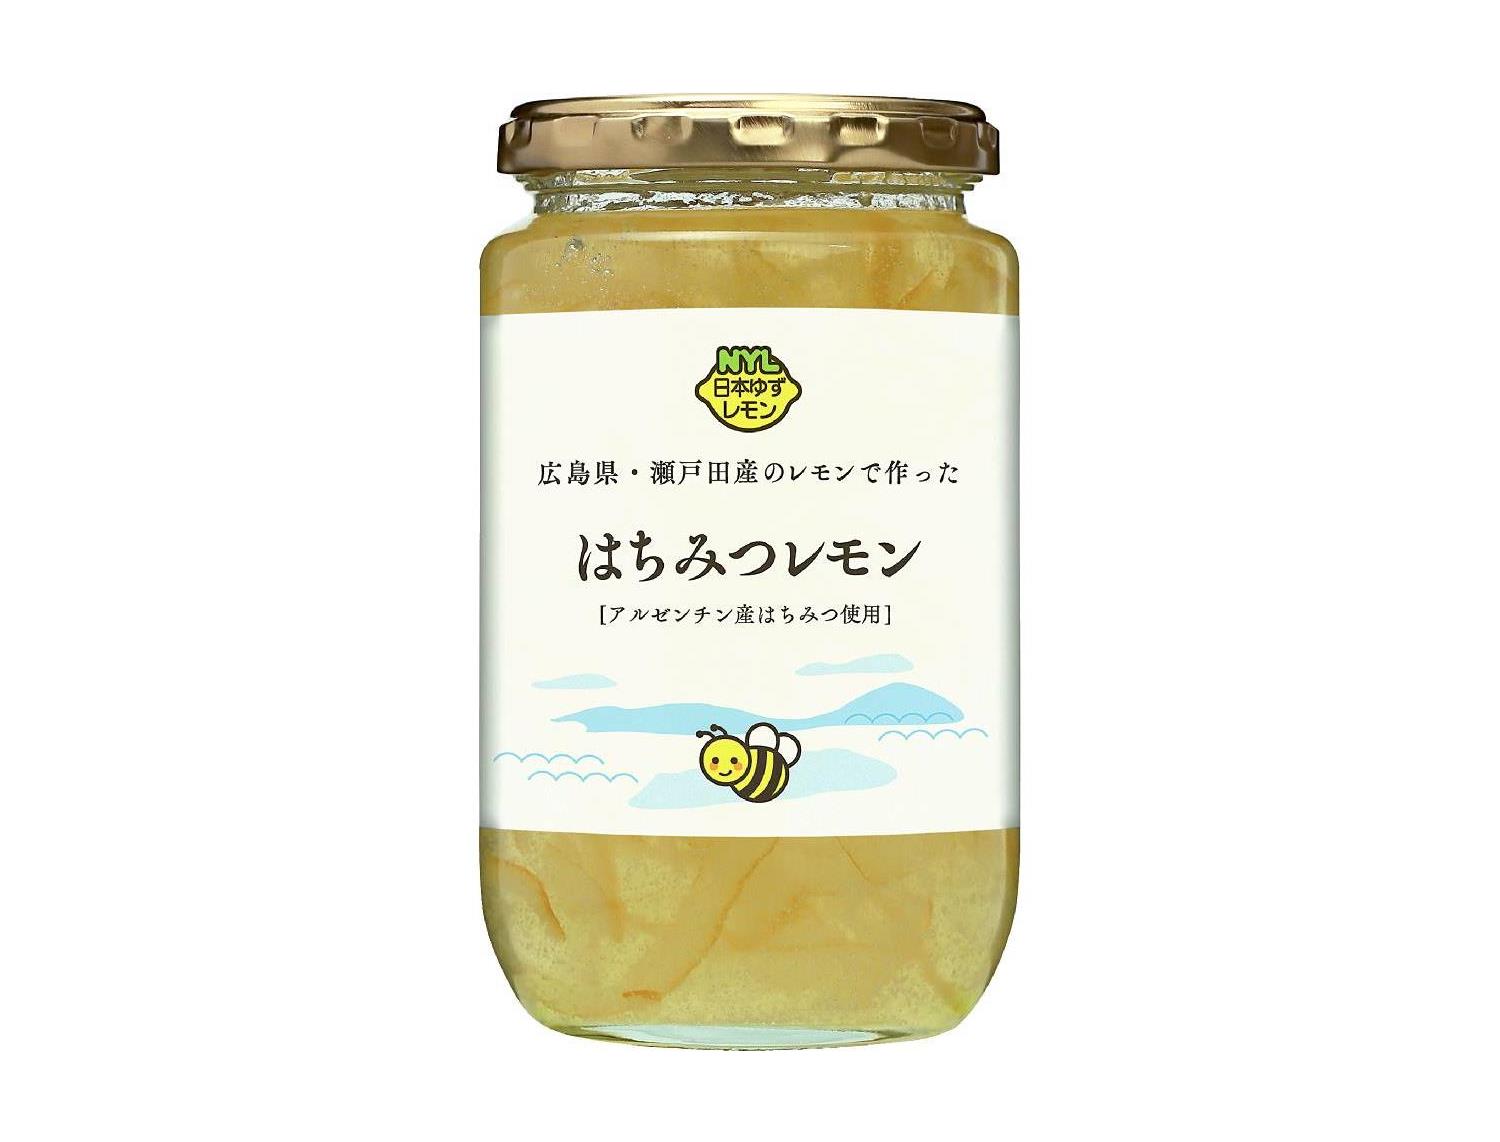 広島県・瀬戸田産のレモンで作ったはちみつレモン